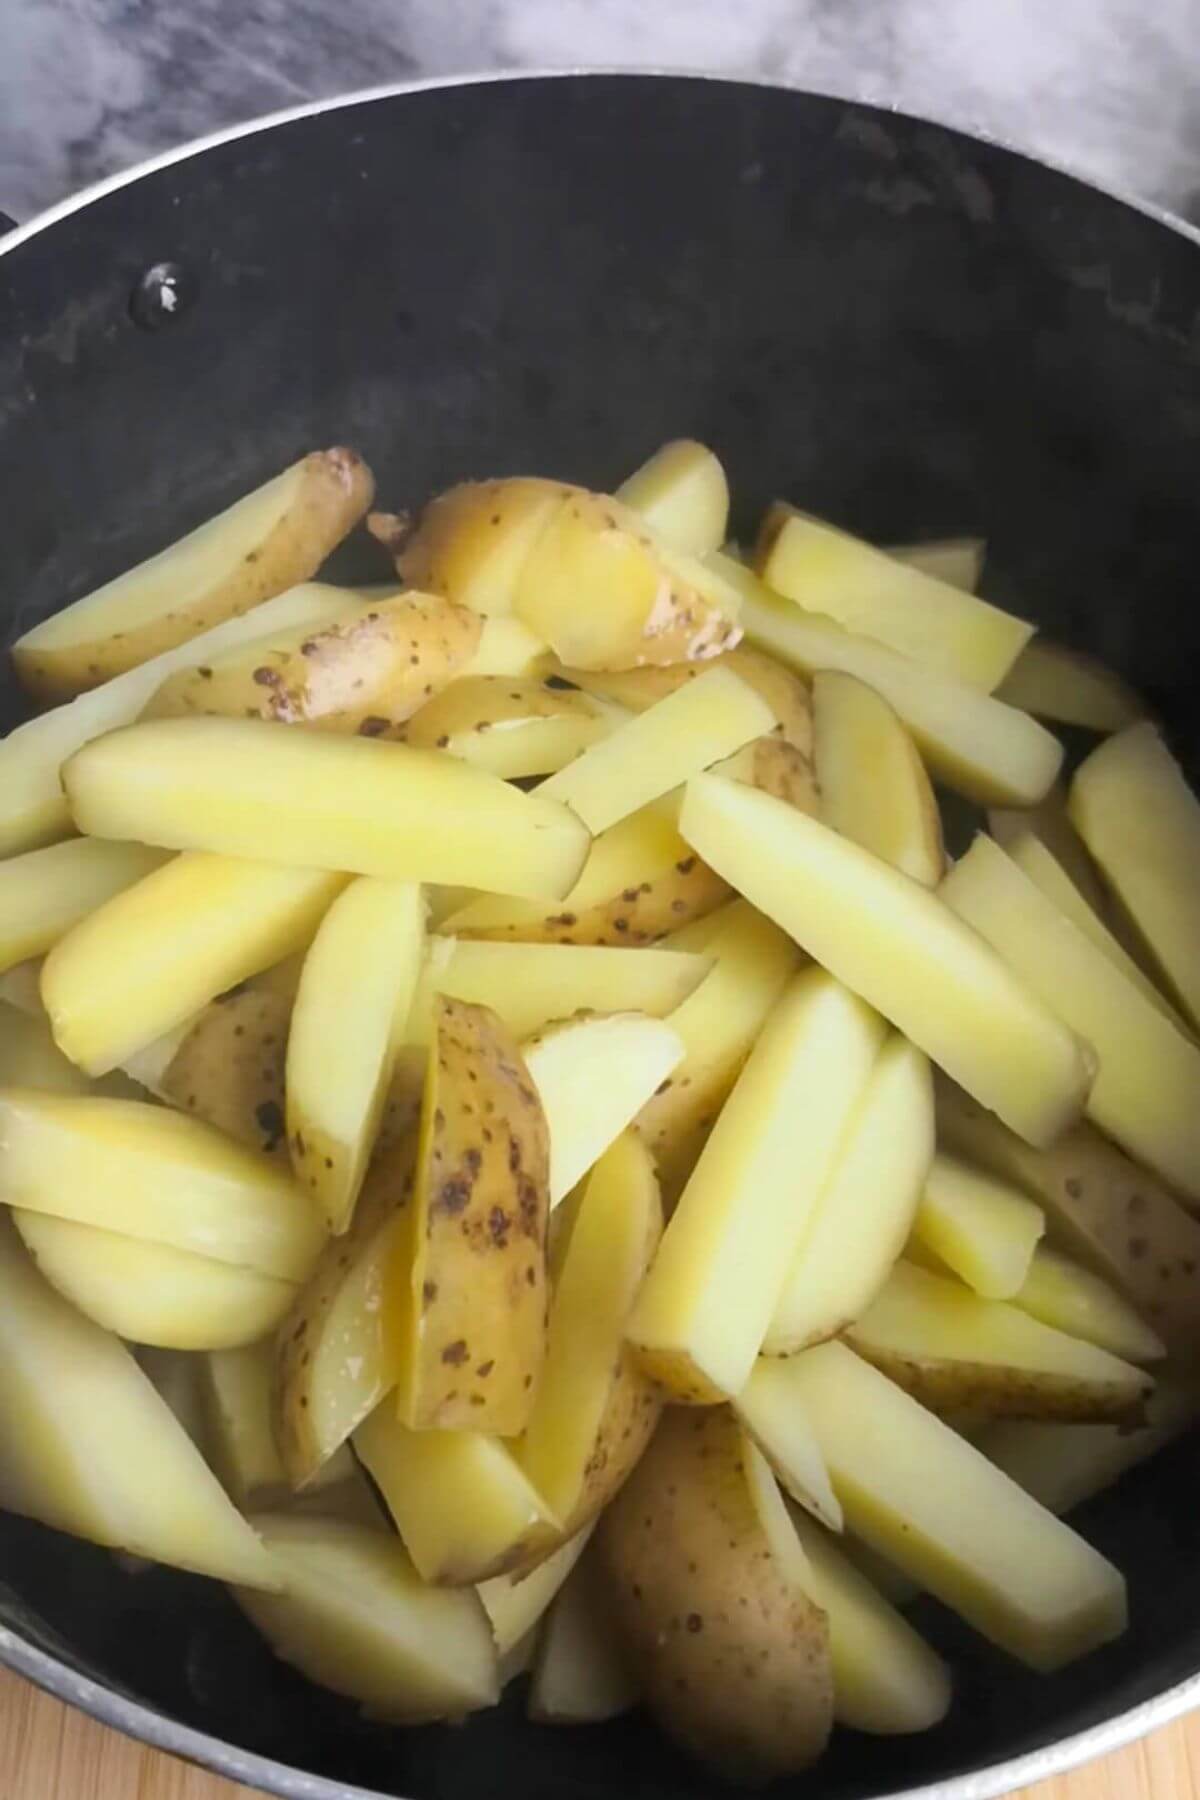 Chips after being par-boiled in a large black pot.